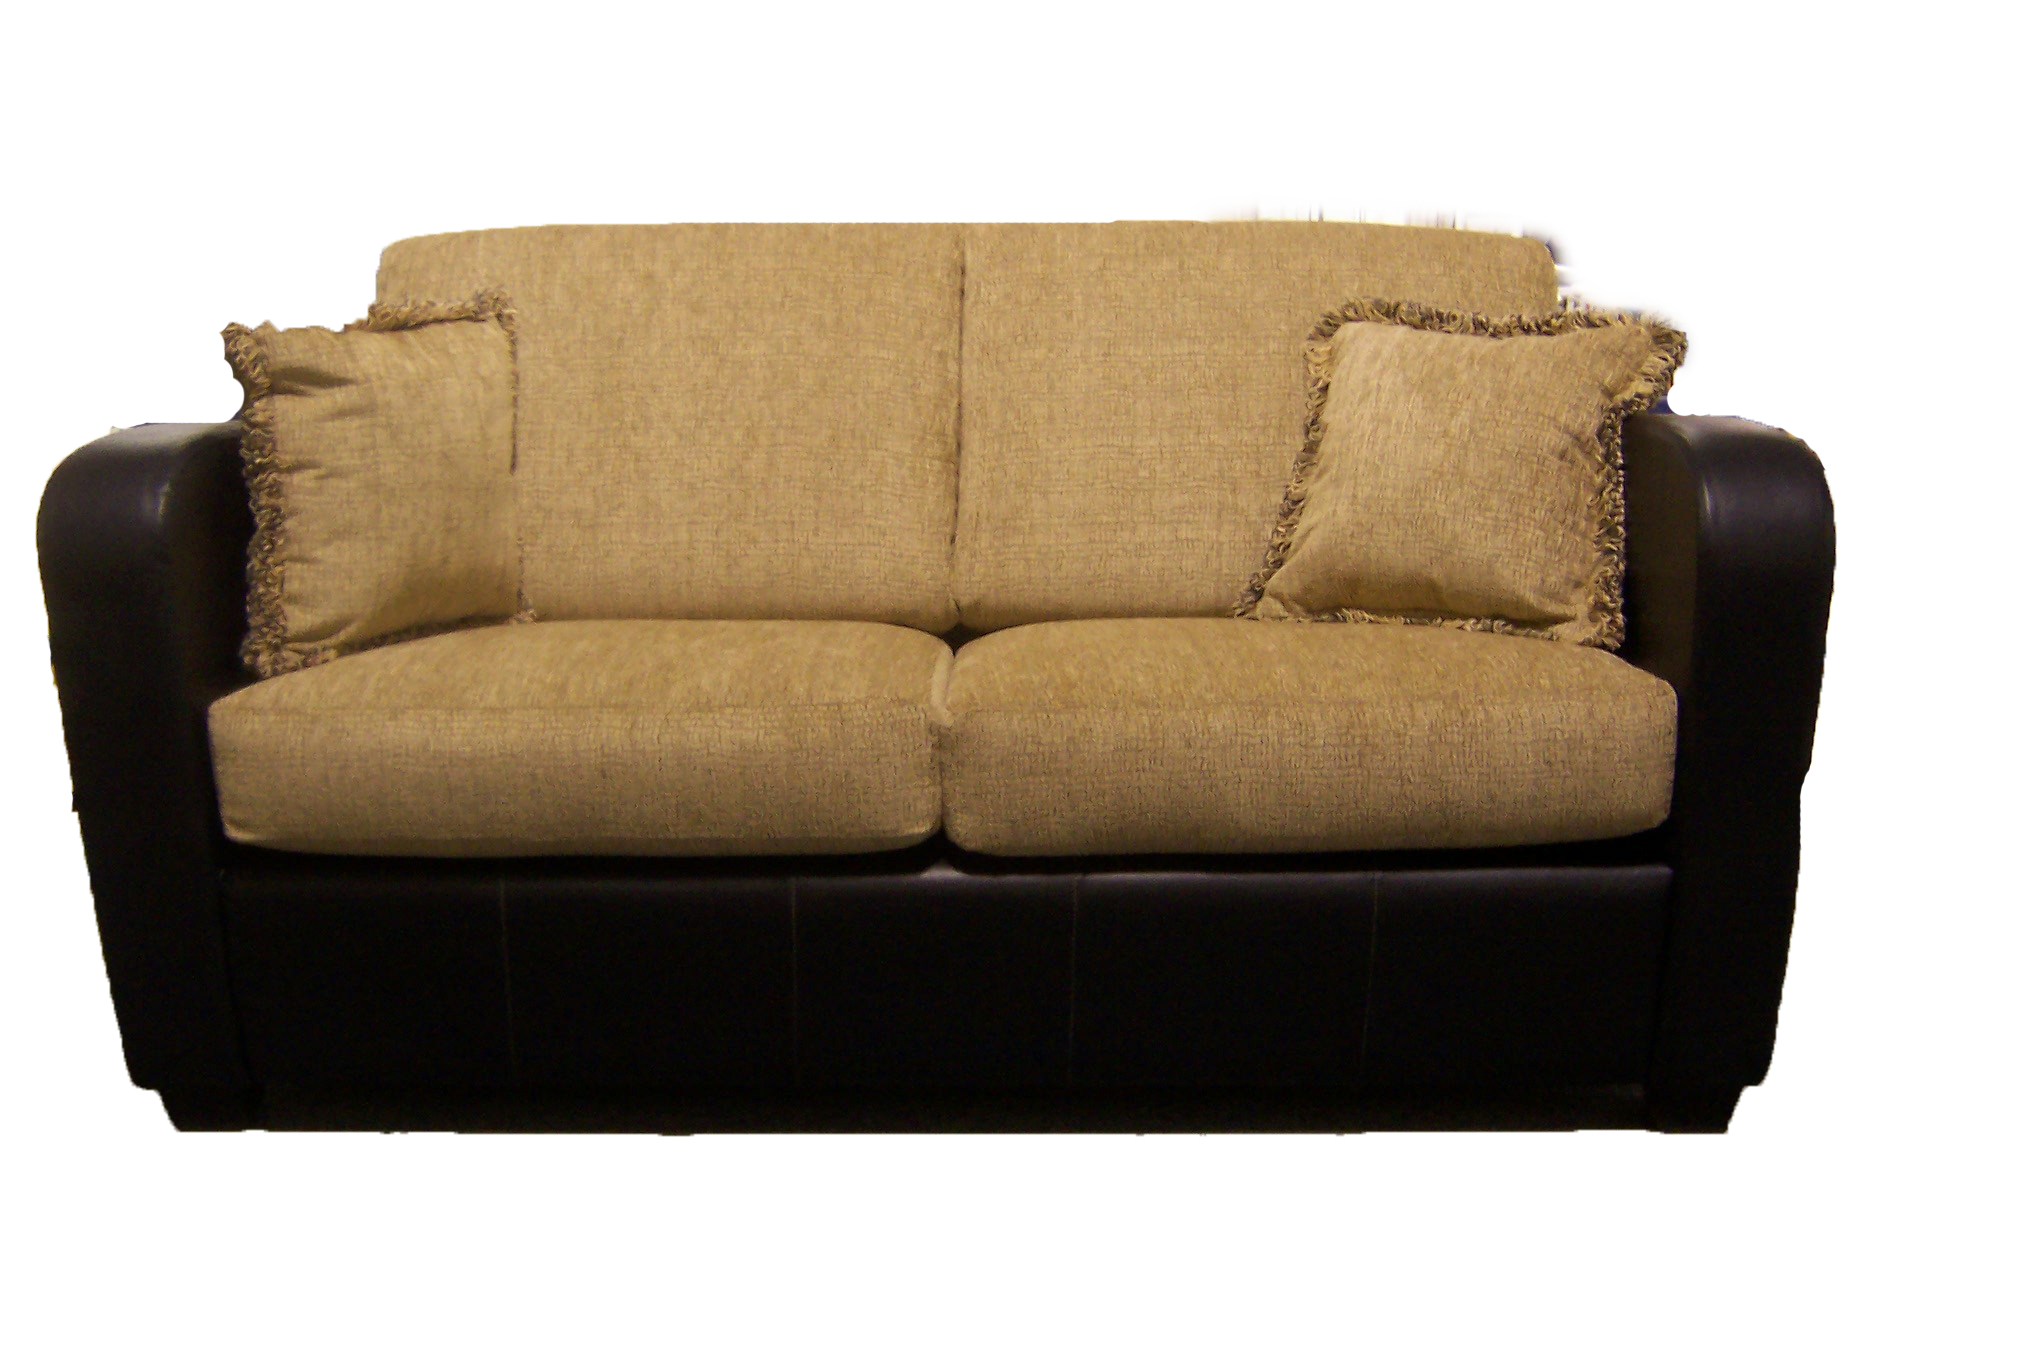 Sofa PNG-PlusPNG.com-627